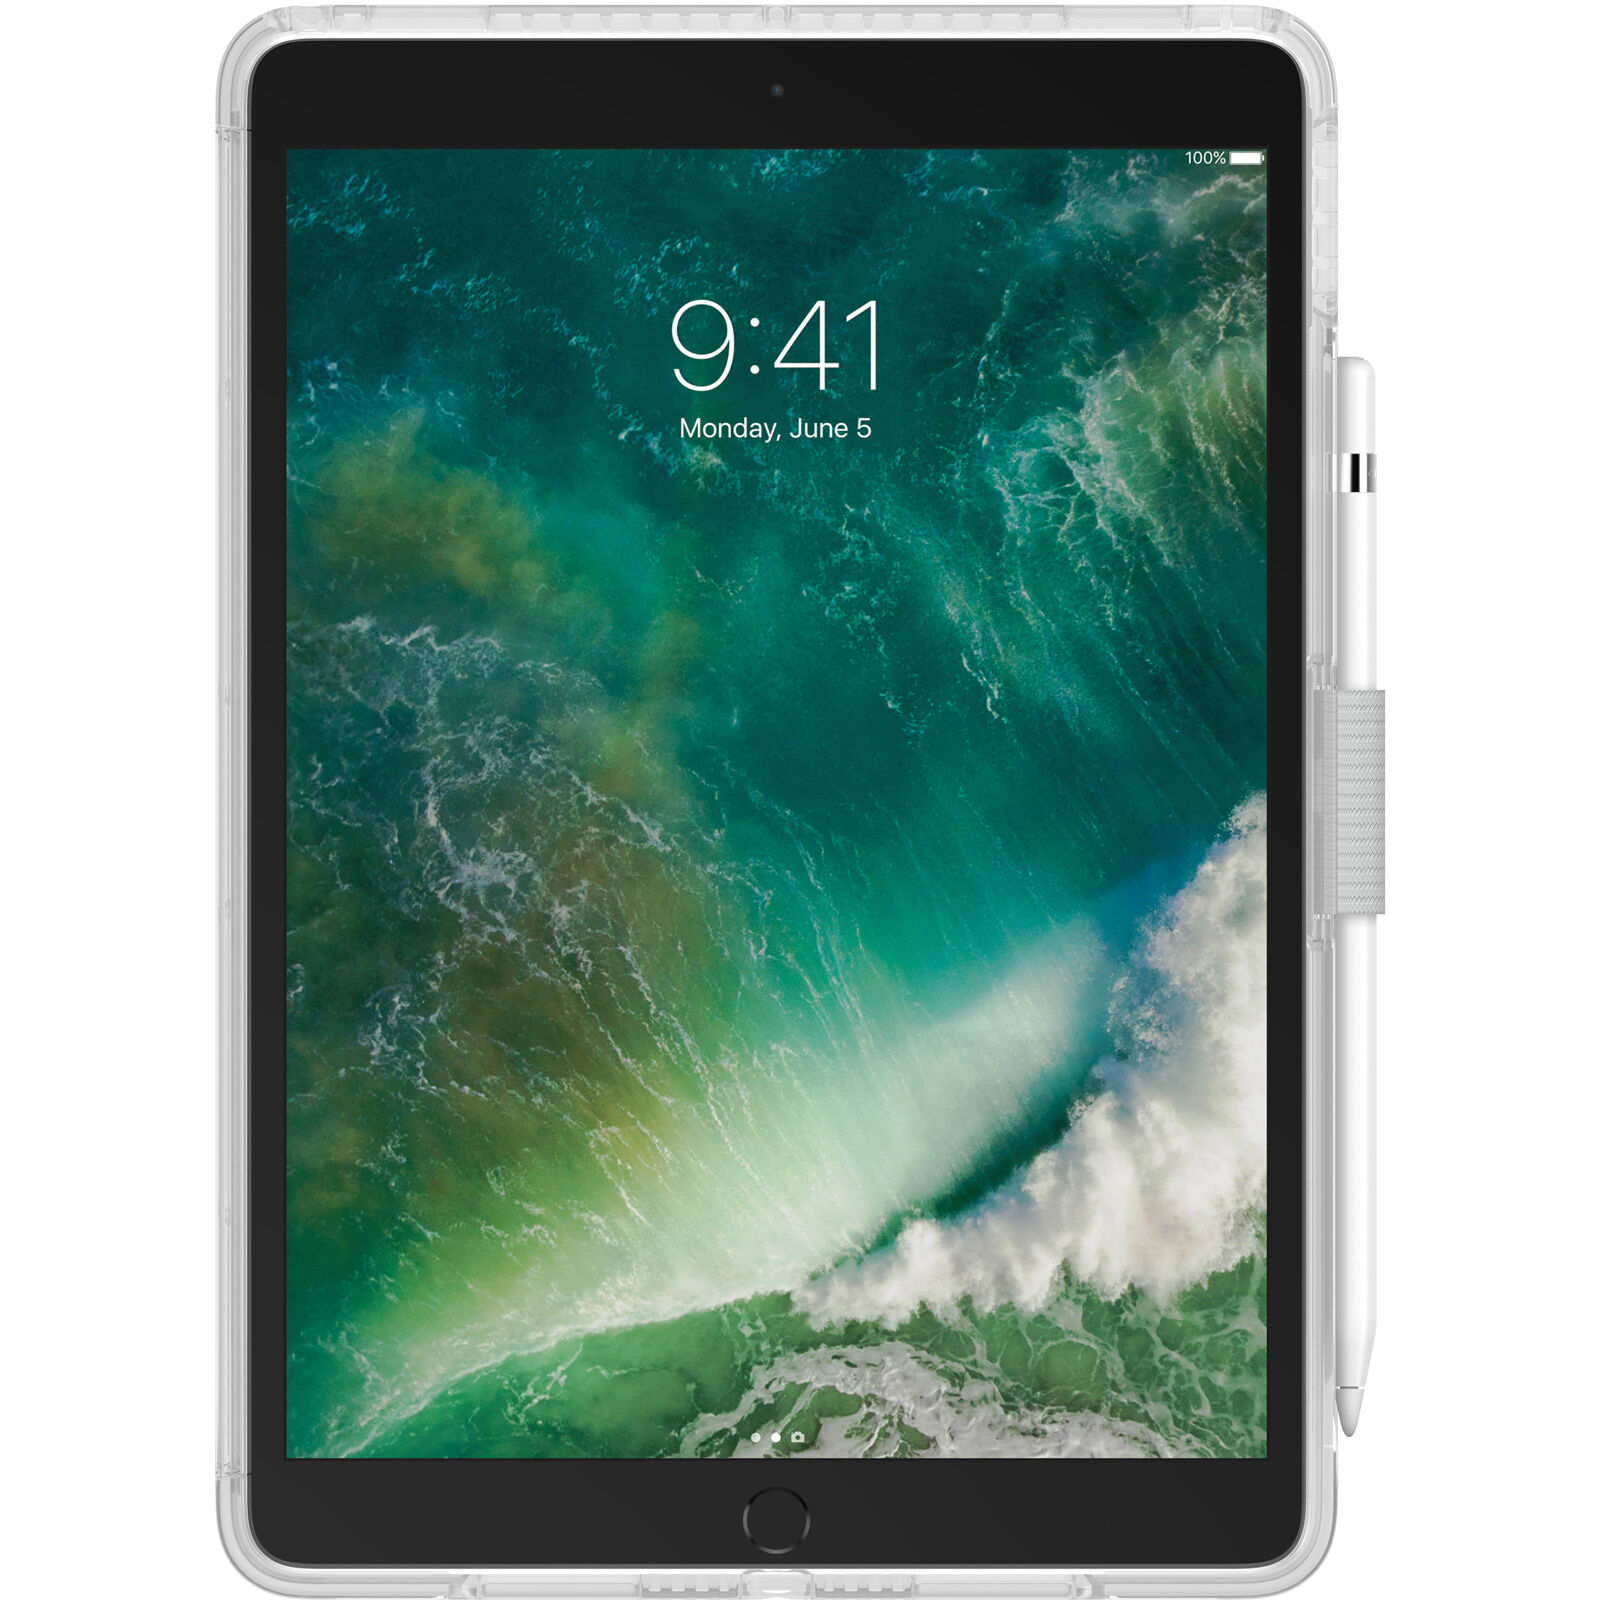 上品な iPad with Shockproof Pro Pro 10.5inch iPad本体